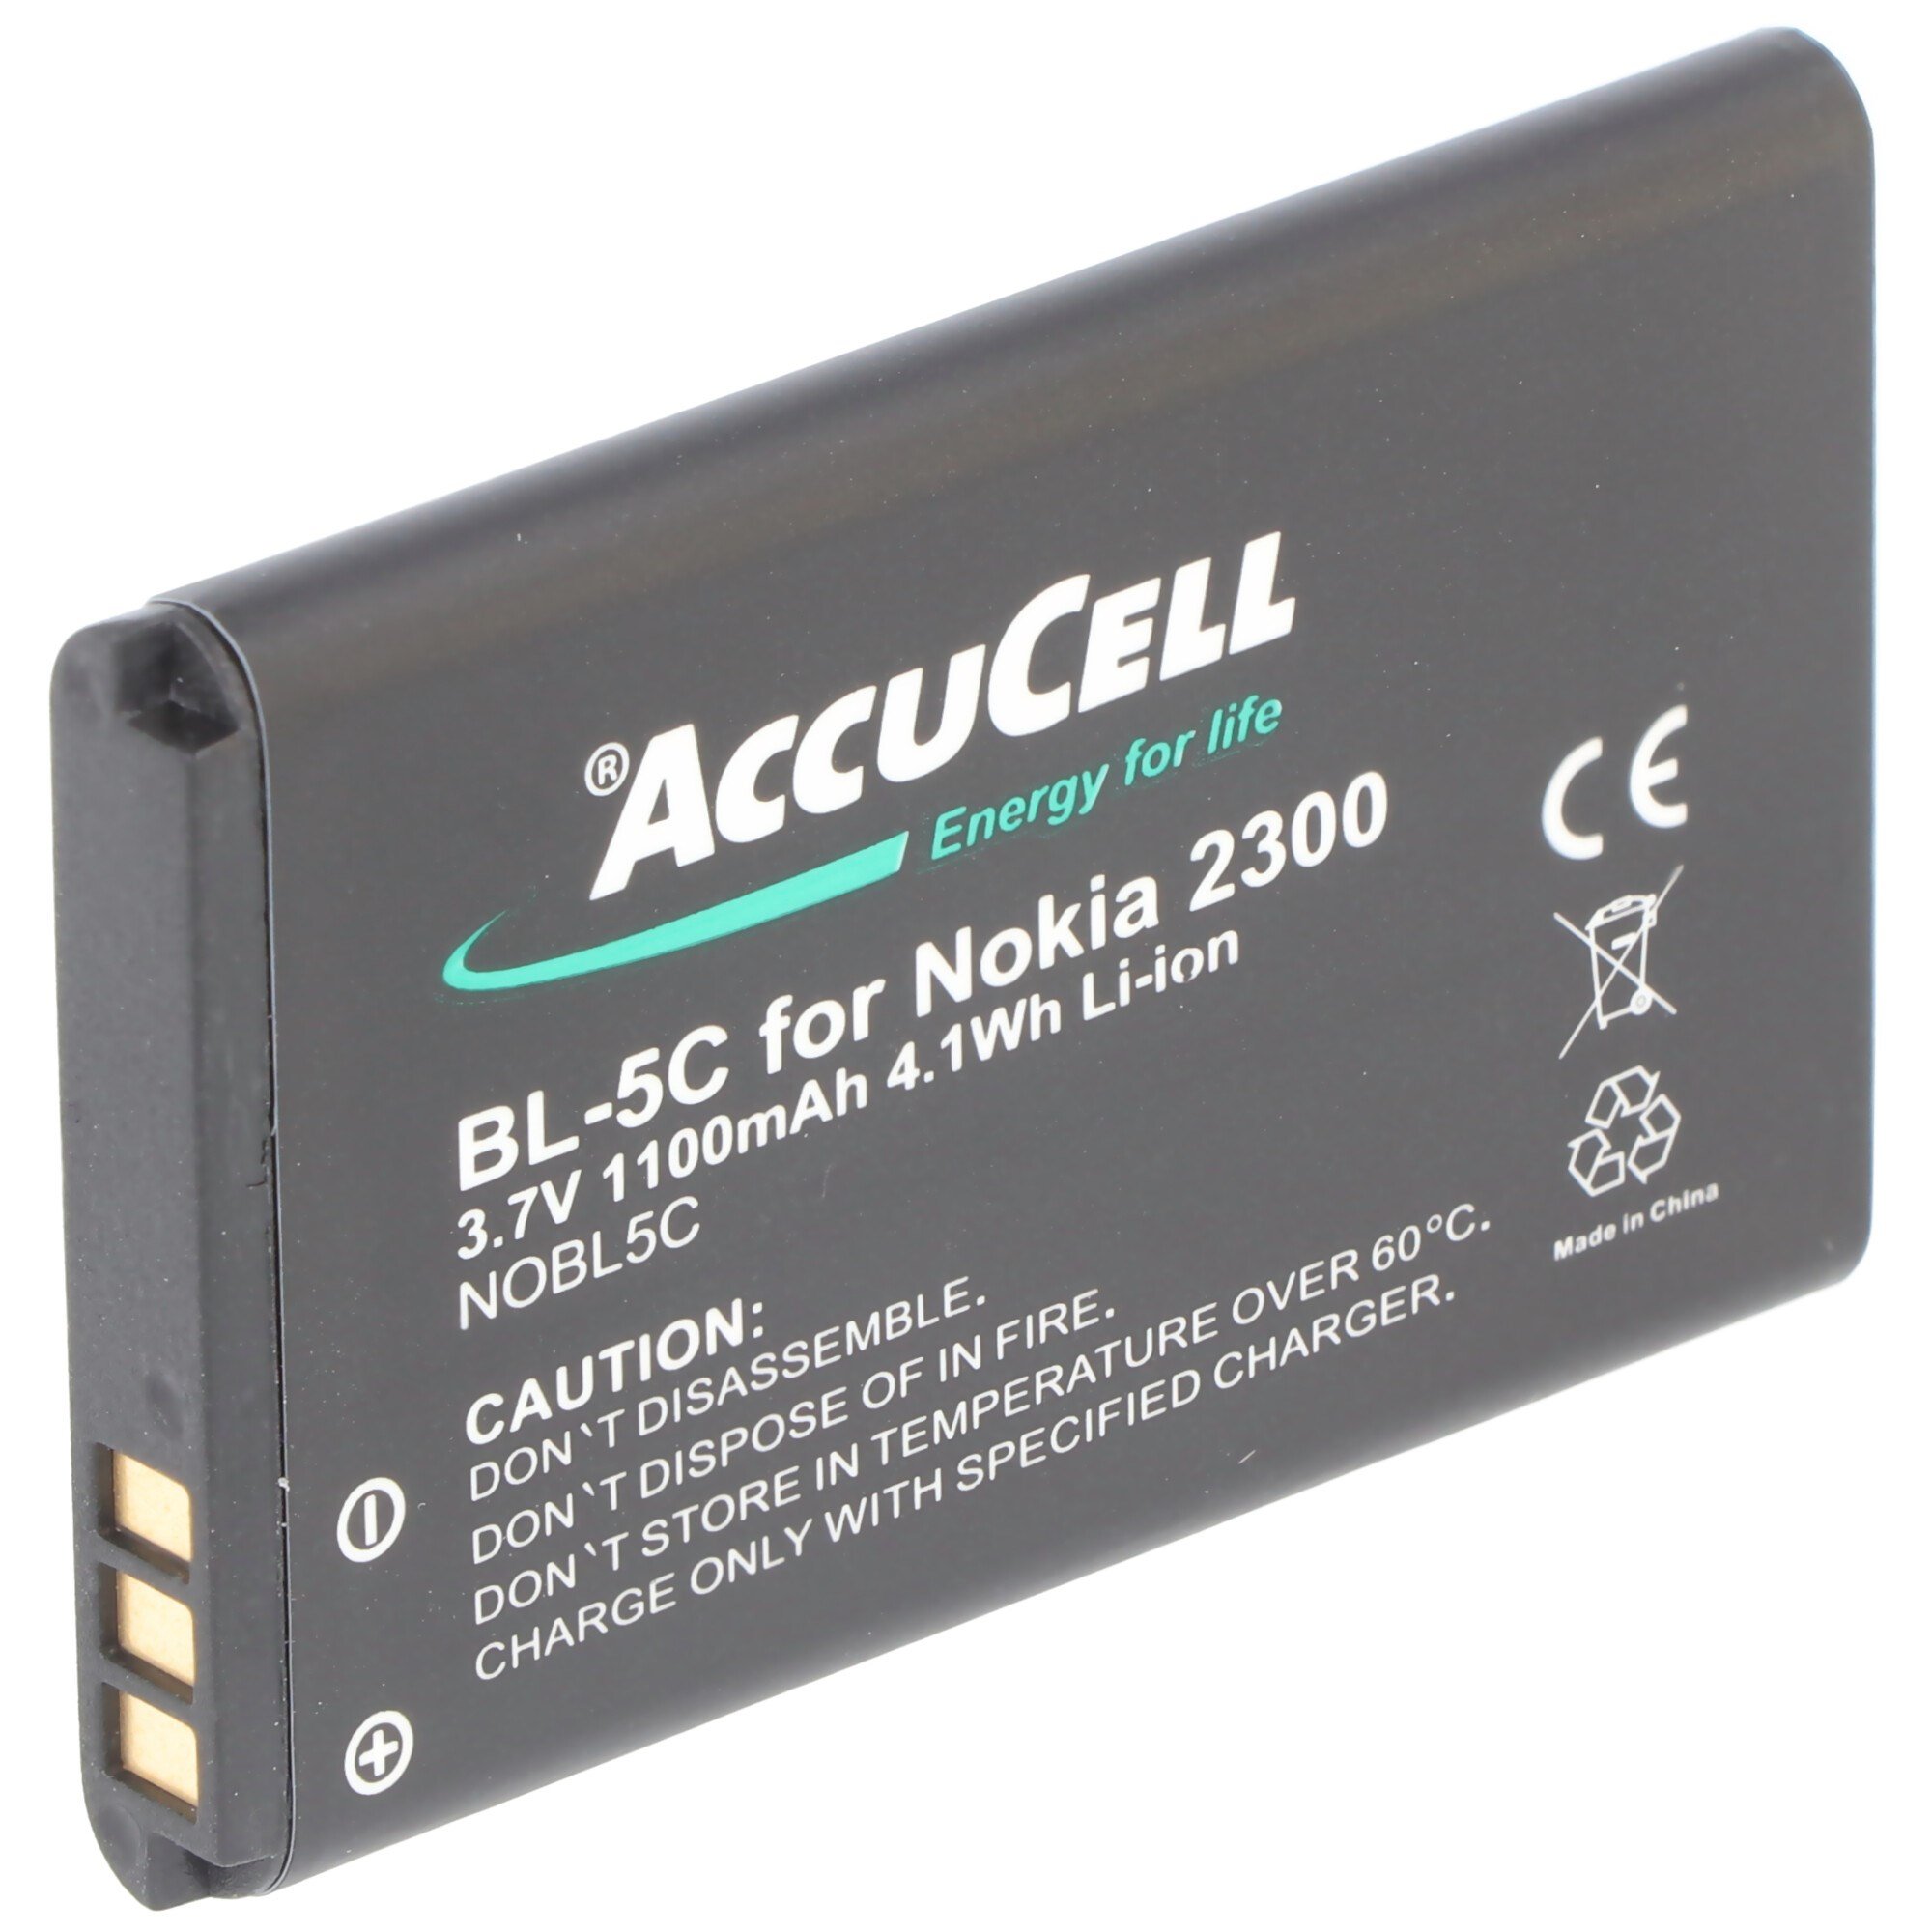 Nokia 1110 batarya BL-5C için uygun AccuCell batarya